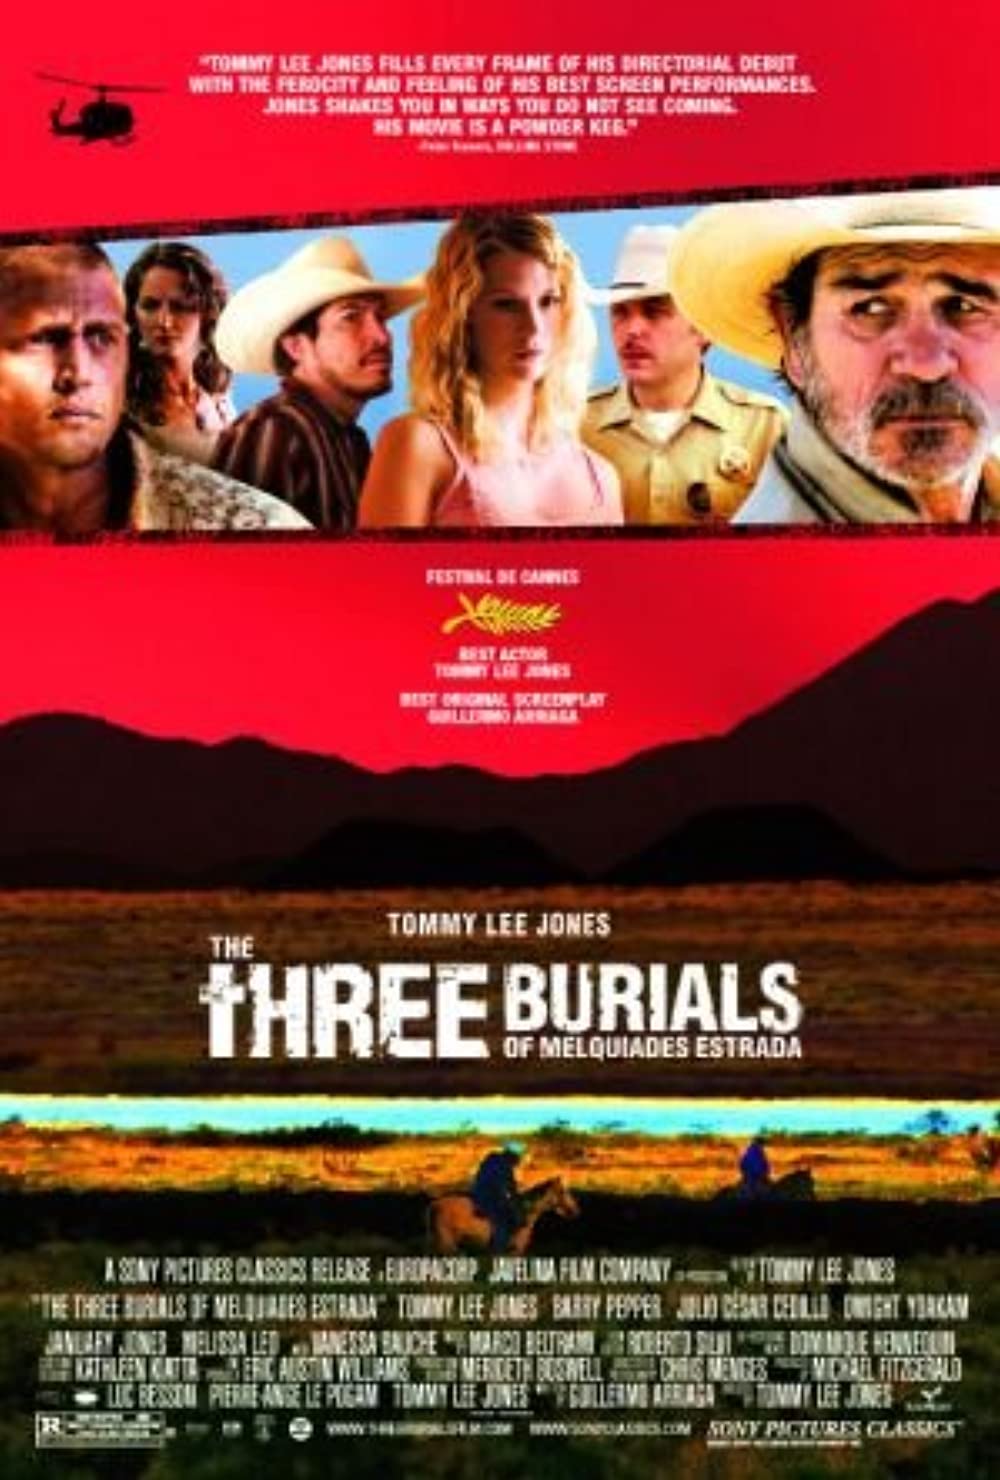 Filmbeschreibung zu Three Burials - Die drei Begräbnisse des Melquiades Estrada